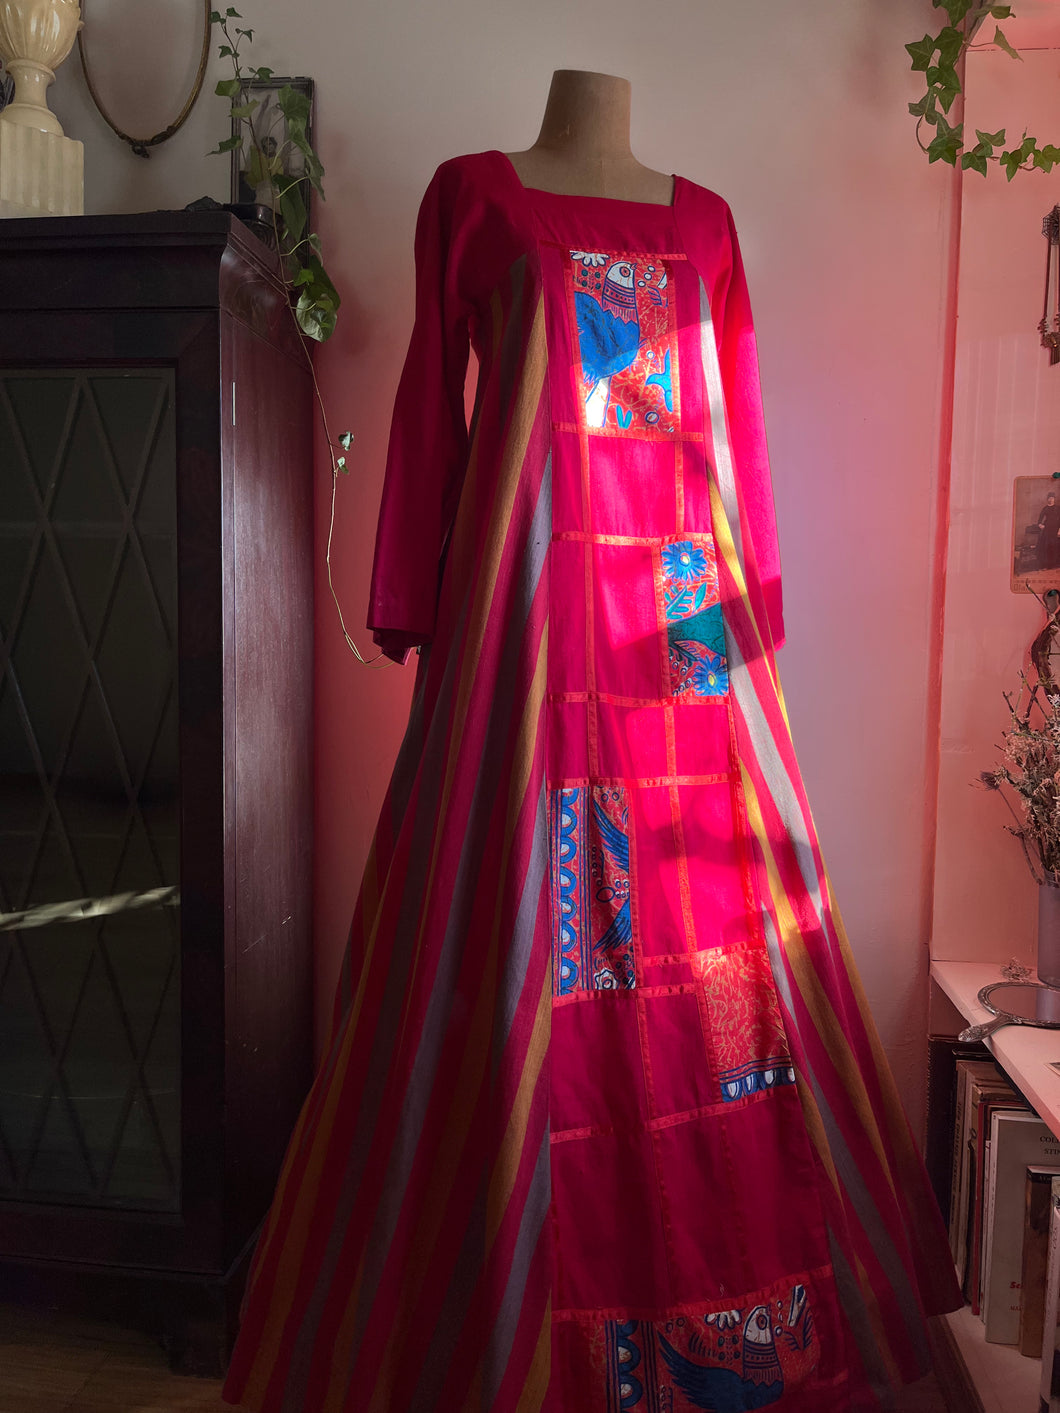 Outrageous Mexico Designer Mama Carlota Bird Print Dress